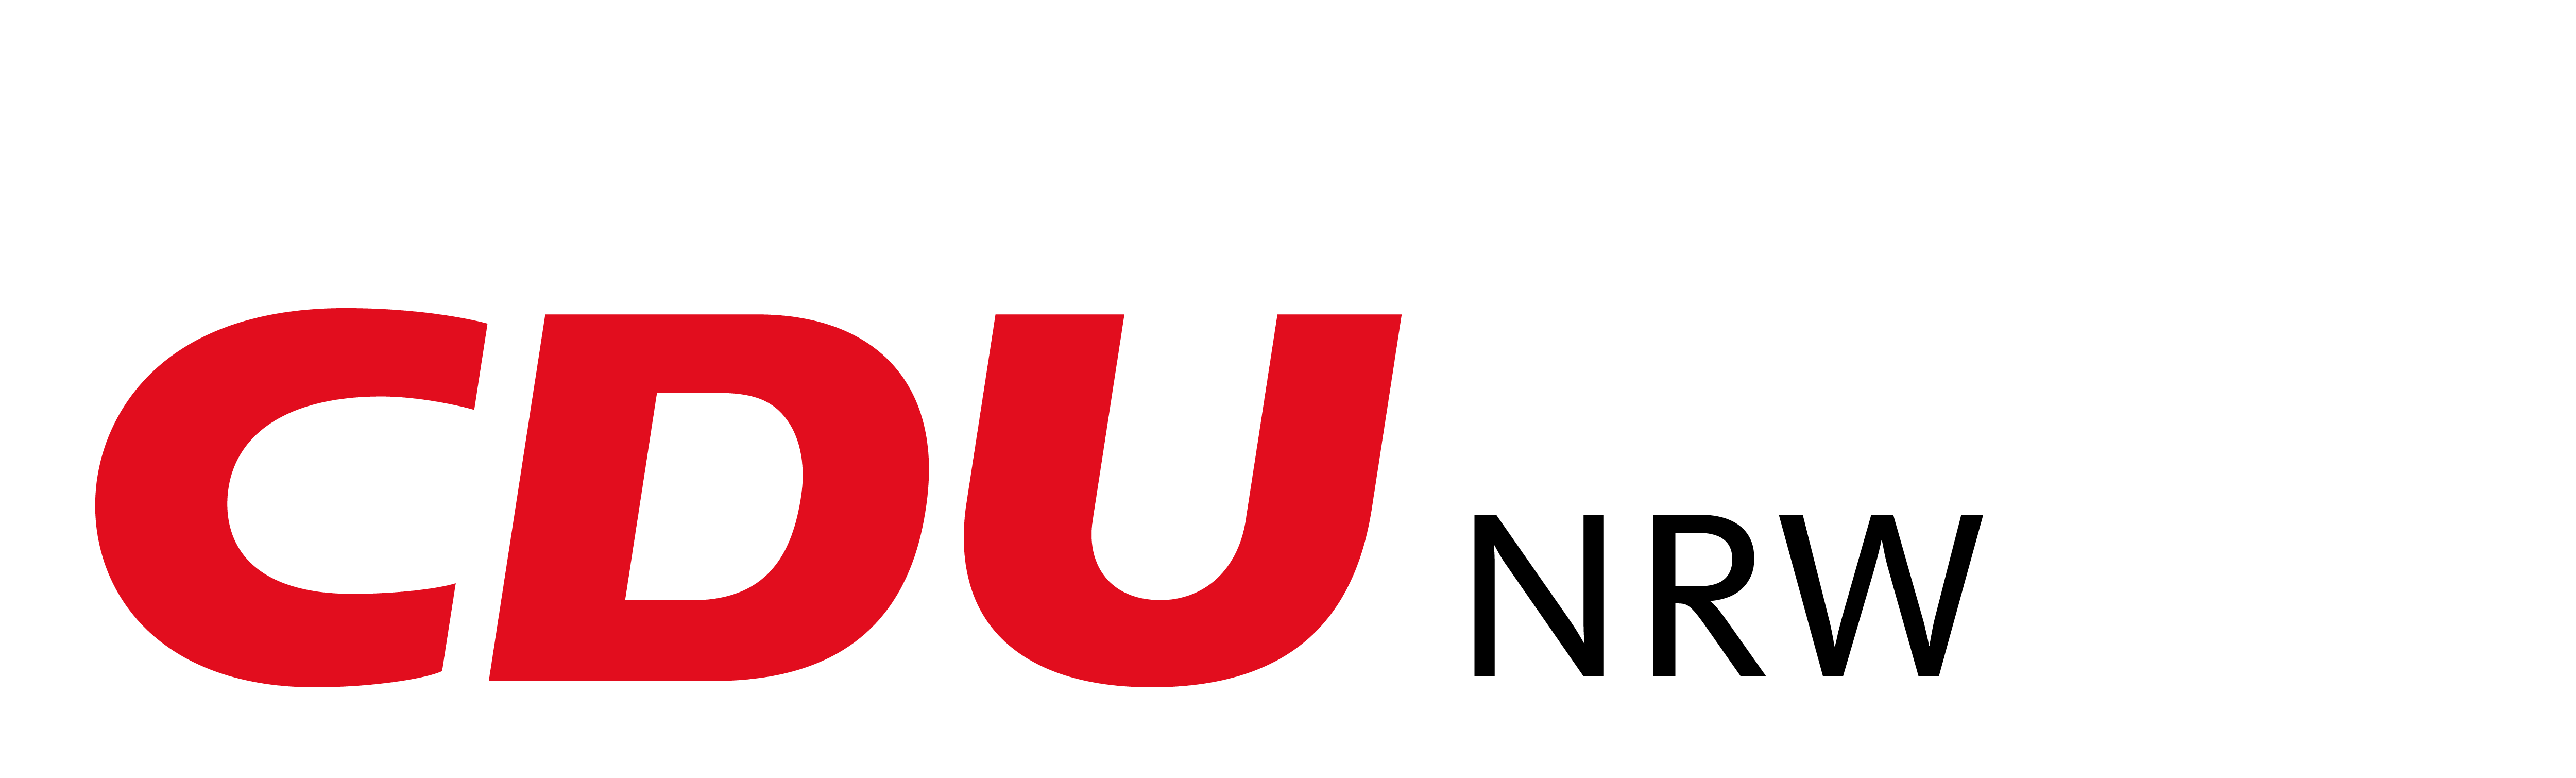 CDU_Logo_WEISS_RGB